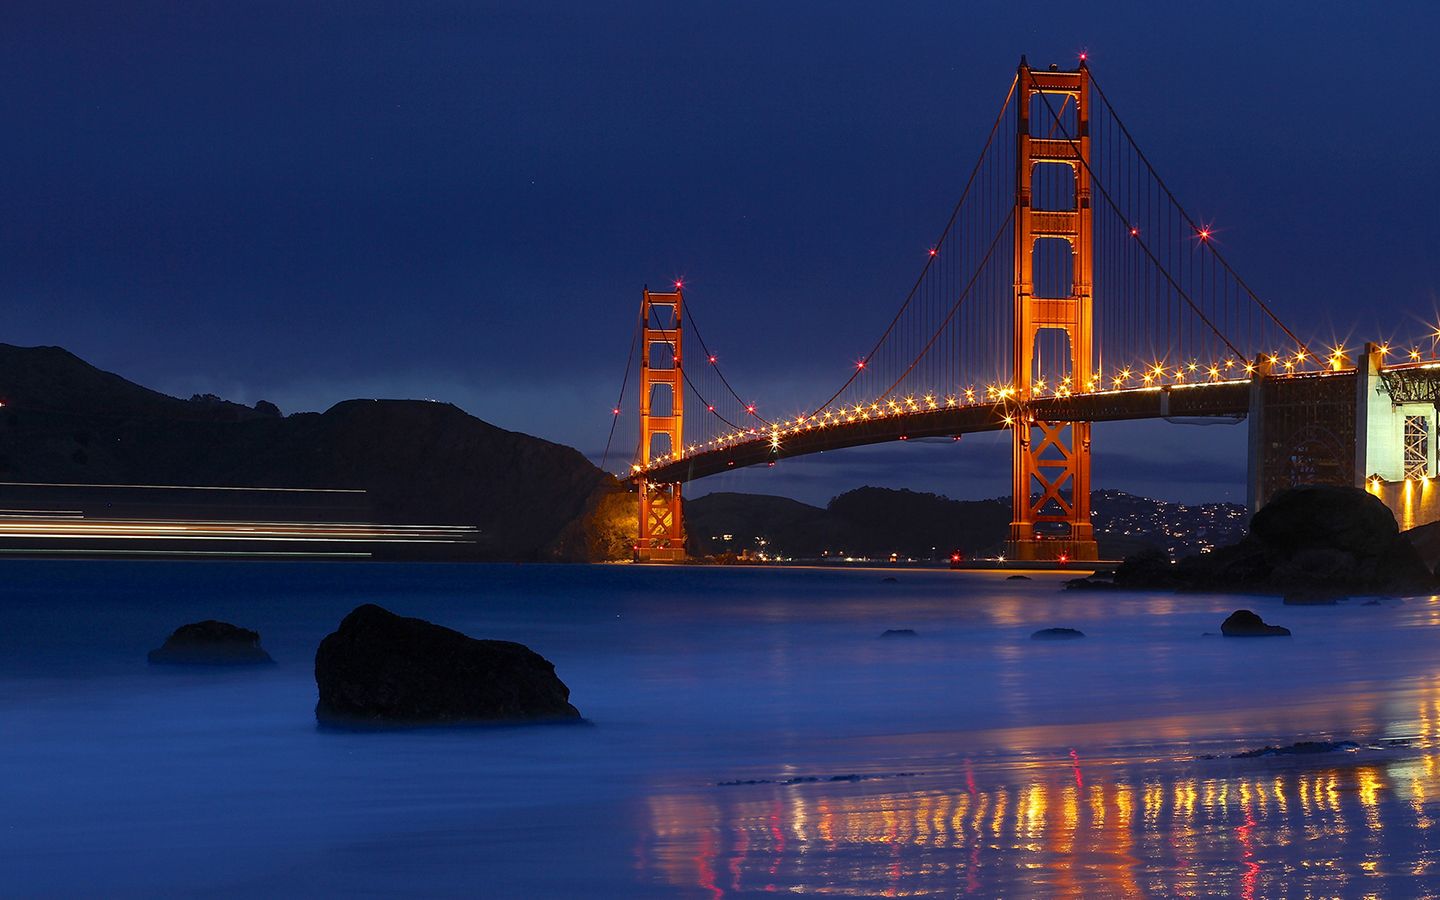 دانلود عکس معروف ترین پل در ایالات متحده آمریکا در شب 